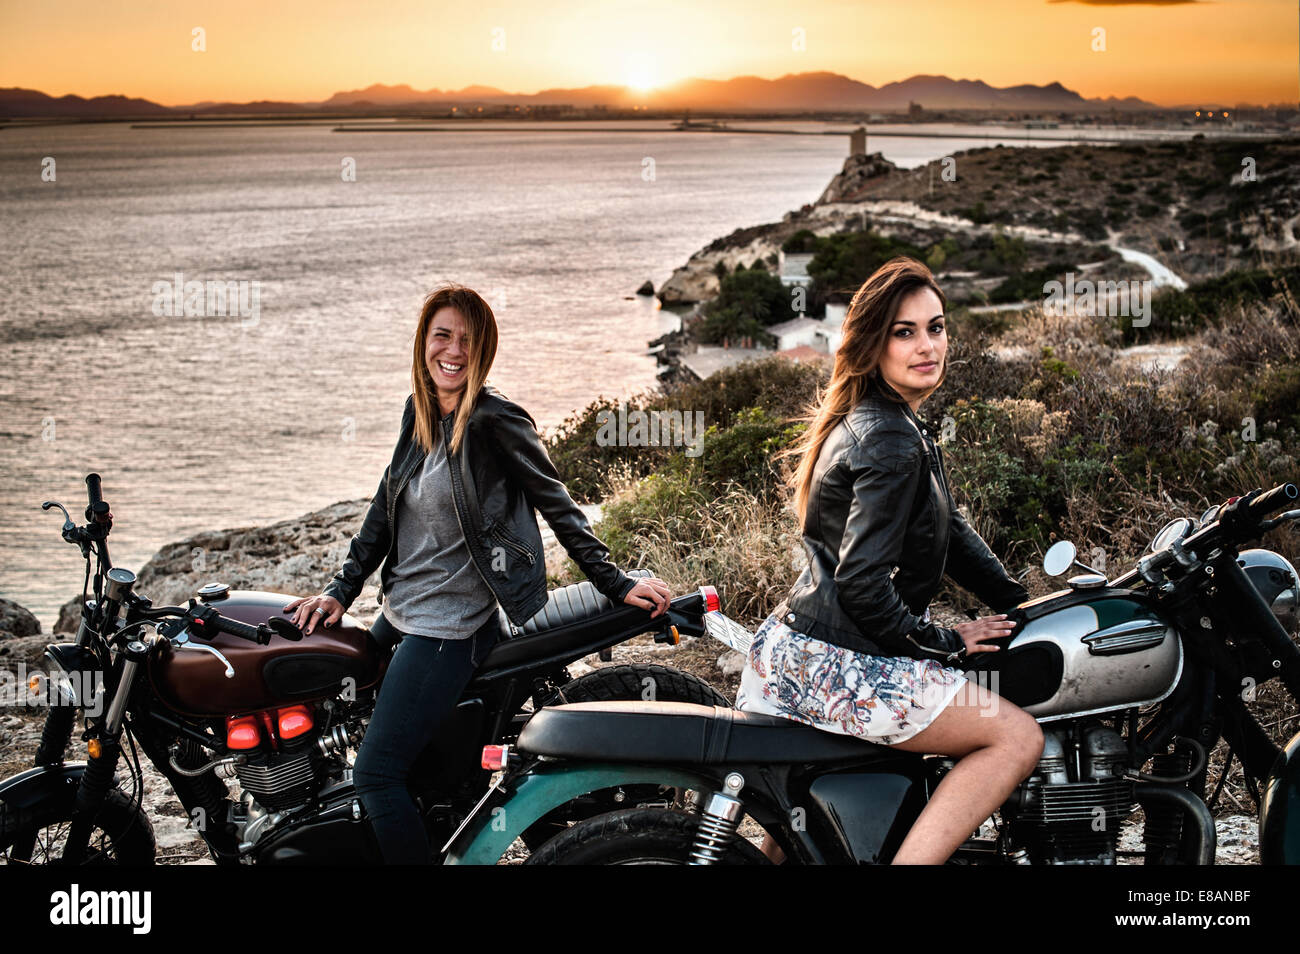 Portrait de deux femmes amis motocyclistes sur l'autre au coucher du soleil, Cagliari, Sardaigne, Italie Banque D'Images